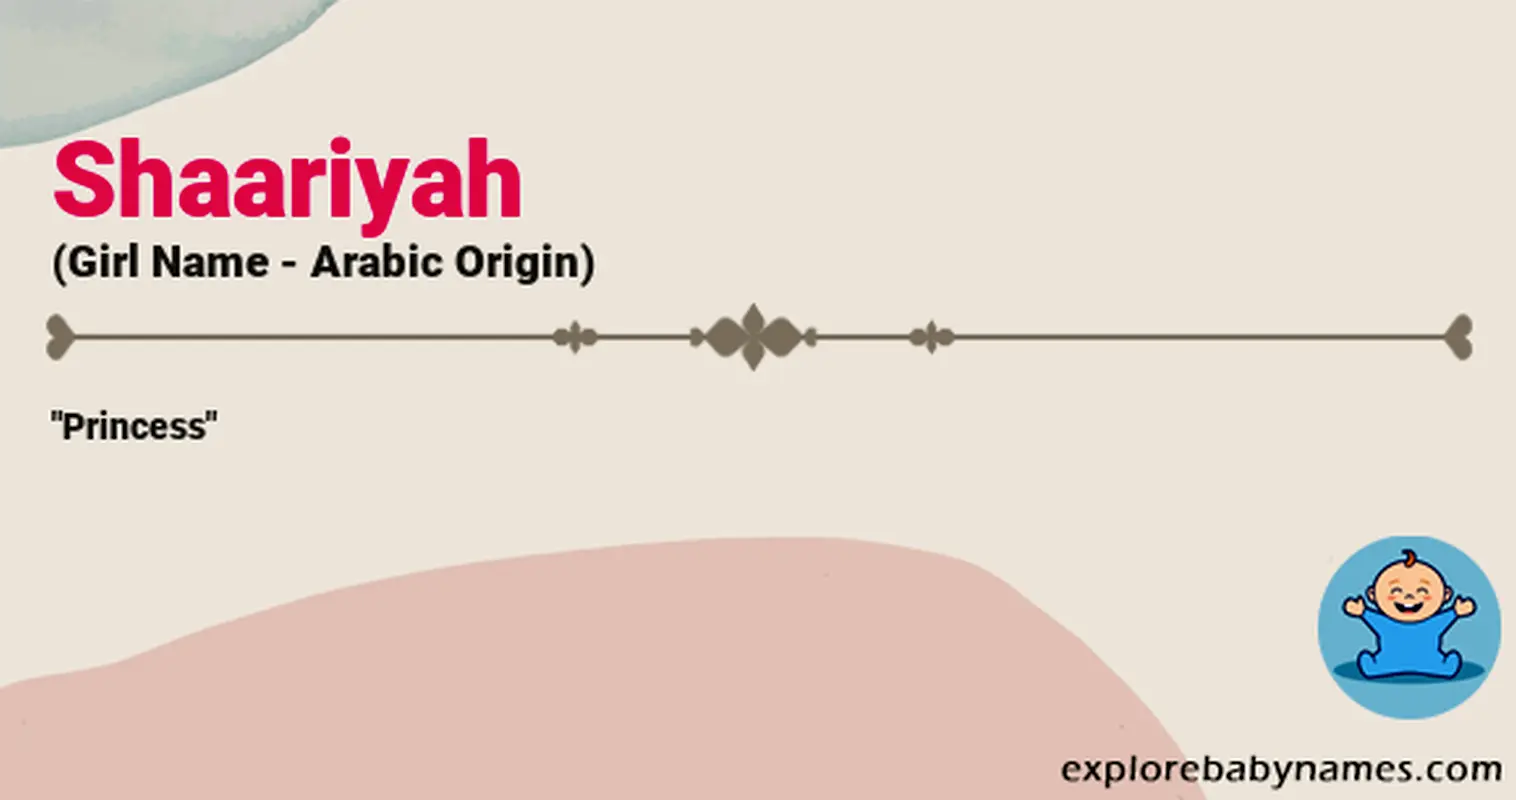 Meaning of Shaariyah